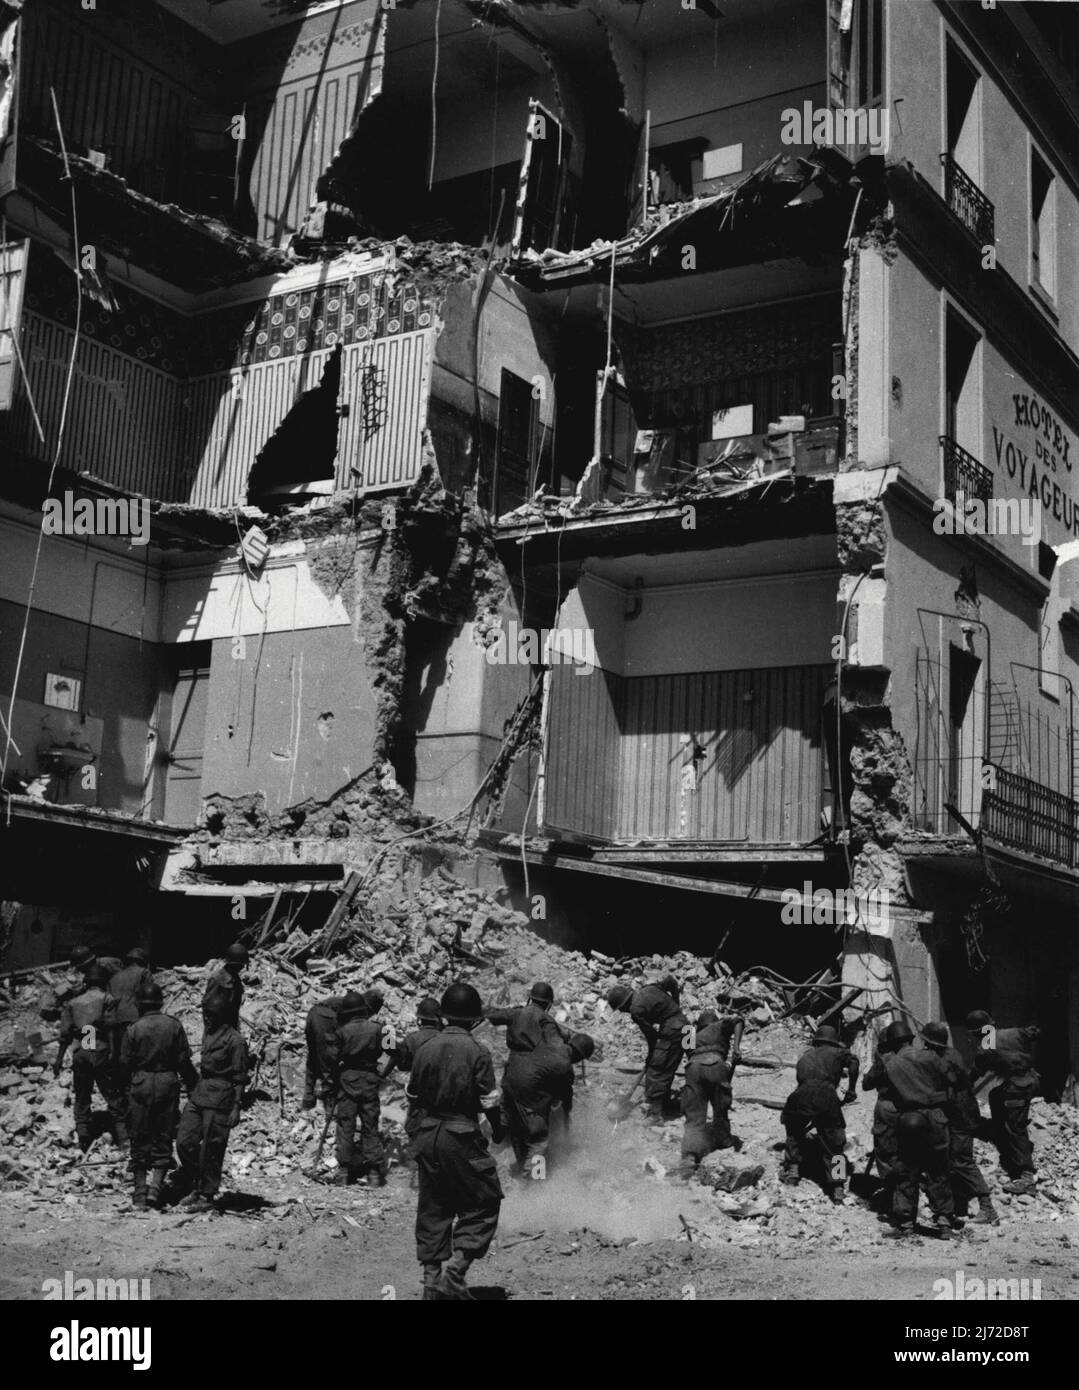 1.100 Gefürchtete Tote bei algerischen Erdbeben - Französische Soldaten arbeiten in den Ruinen des Hotel Baudouin, Orleansville. Es wird angenommen, dass mehr als 1.100 Menschen bei den Erdbeben, die letzte Woche die Stadt Orleansville und die benachbarten Bezirke in Zentralalgerien erschütterten, ihr Leben verloren haben. Bisher haben Rettungskräfte über 750 Leichen geborgen, aber es ist sicher, dass noch etwa 400 weitere unter den Steinhaufen begraben sind. Mindestens 4.000 Menschen sollen verletzt worden sein. 12. September 1954. (Foto von Daily Mirror). Stockfoto